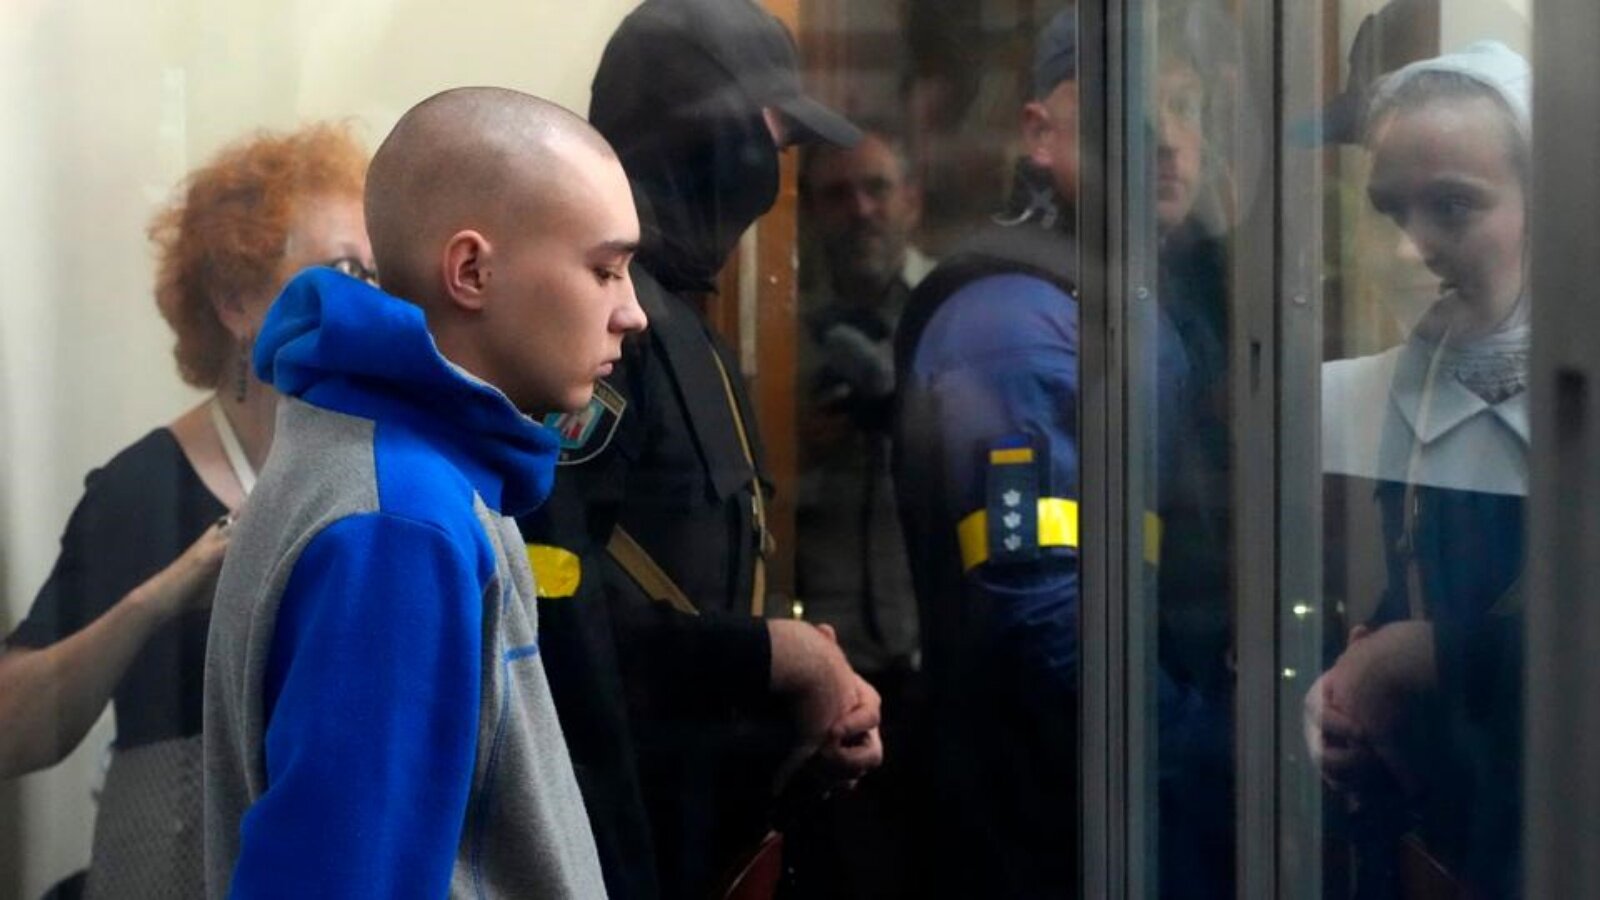 في مواجهة عقوبة السجن المؤبد، ينظر الجندي الروسي نحو الأرض بينما يقرأ المدعي العام التهم الموجهة إليه باللغة الأوكرانية